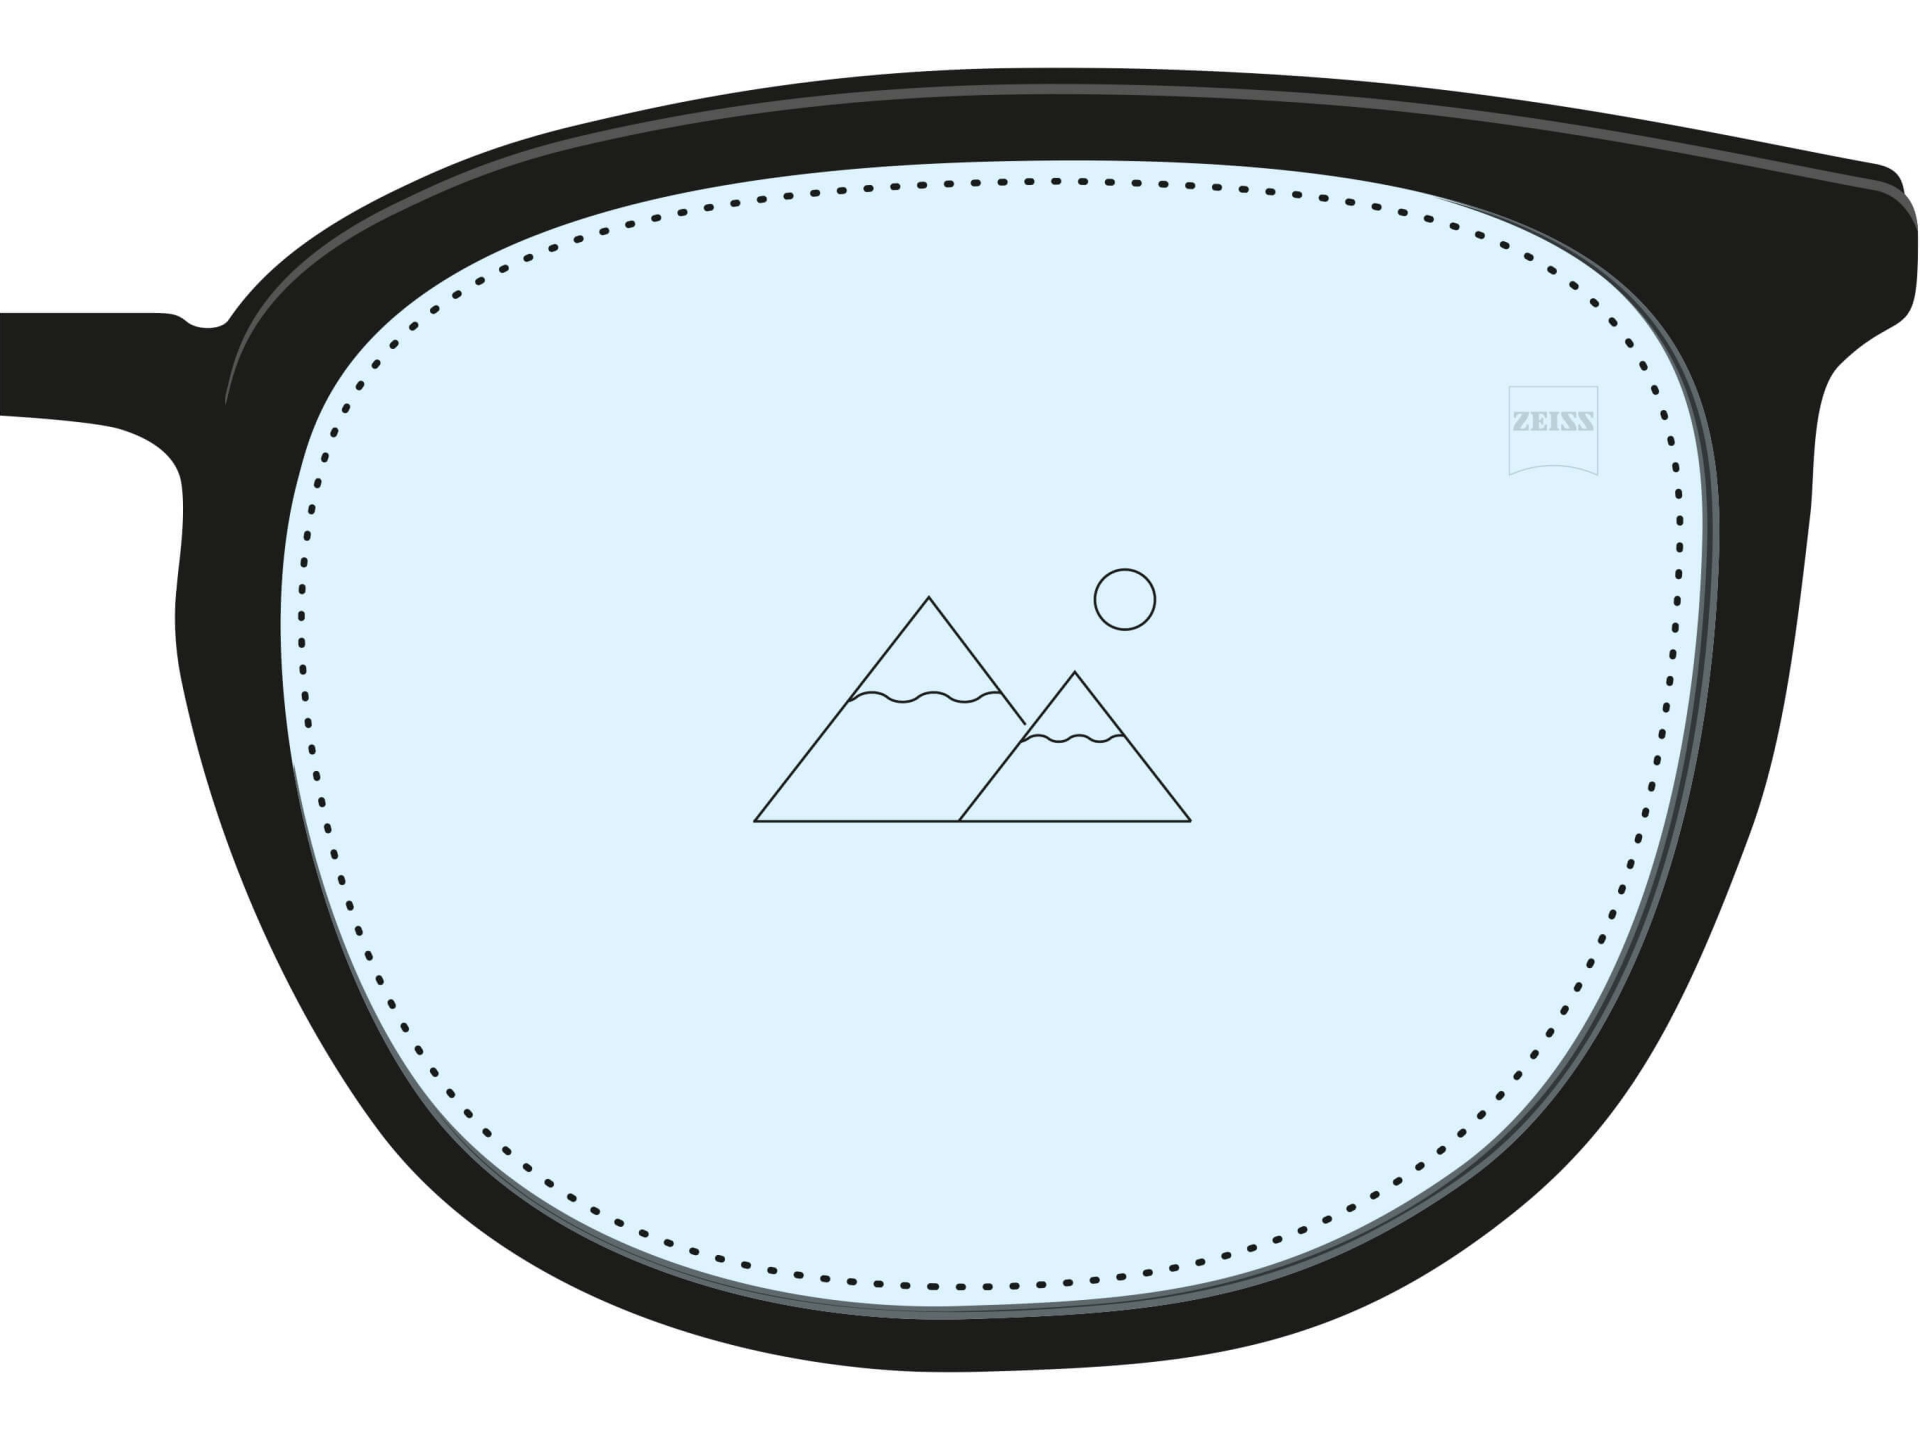 Abbildung eines Einstärkenglases. Das gesamte Glas ist farblich hellblau dargestellt und ein einzelnes Symbol zeigt, dass es nur einen Korrekturwert für eine Entfernung gibt.